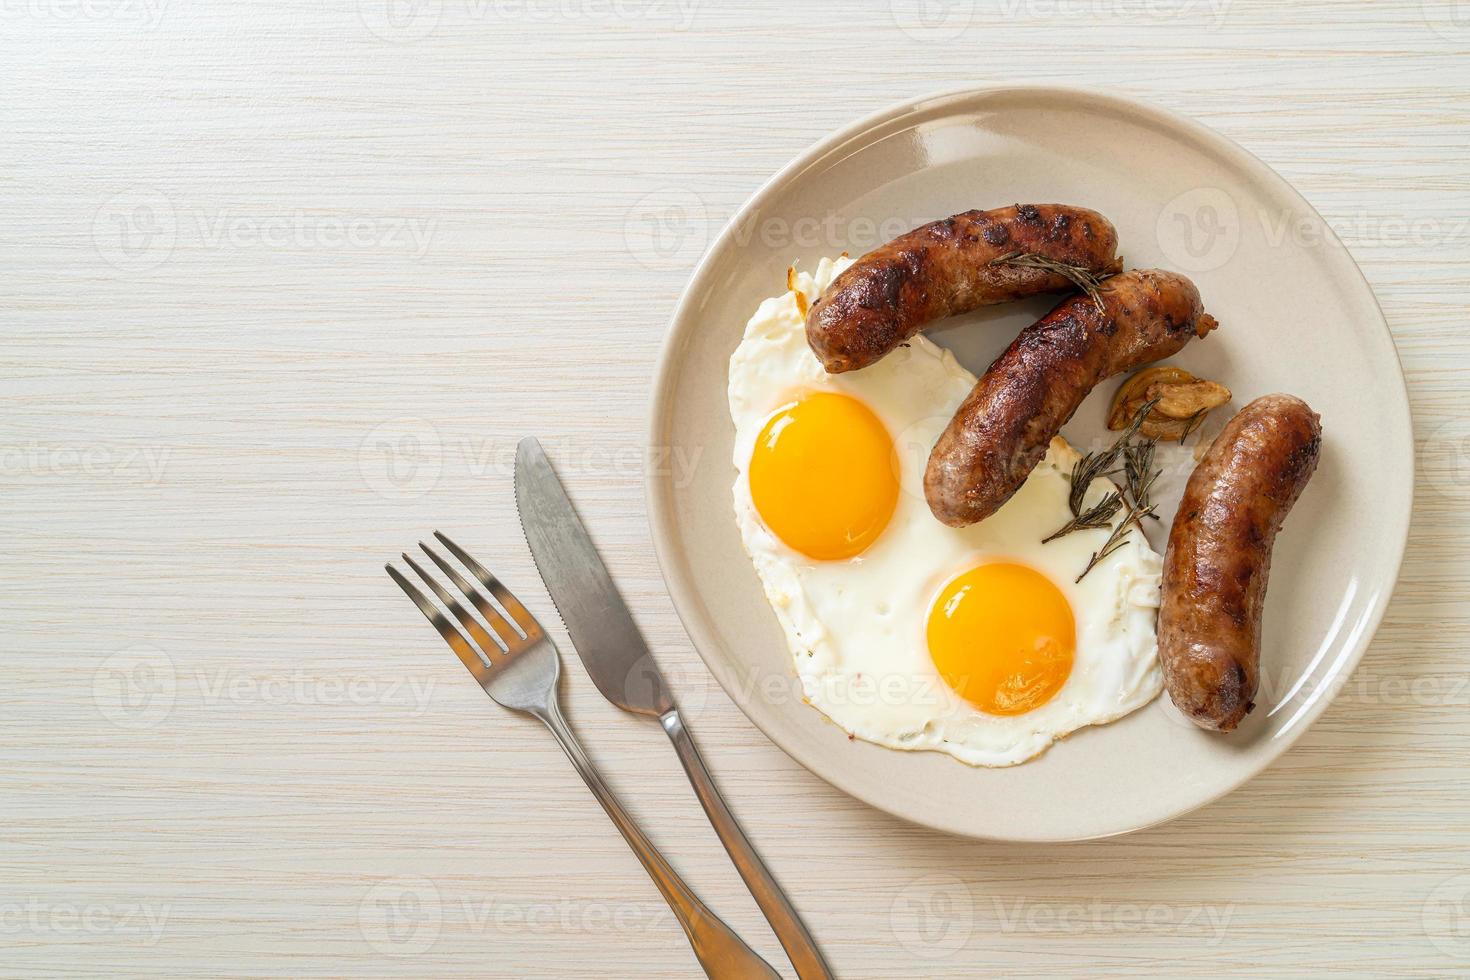 ovo frito duplo caseiro com linguiça de porco frita - no café da manhã foto